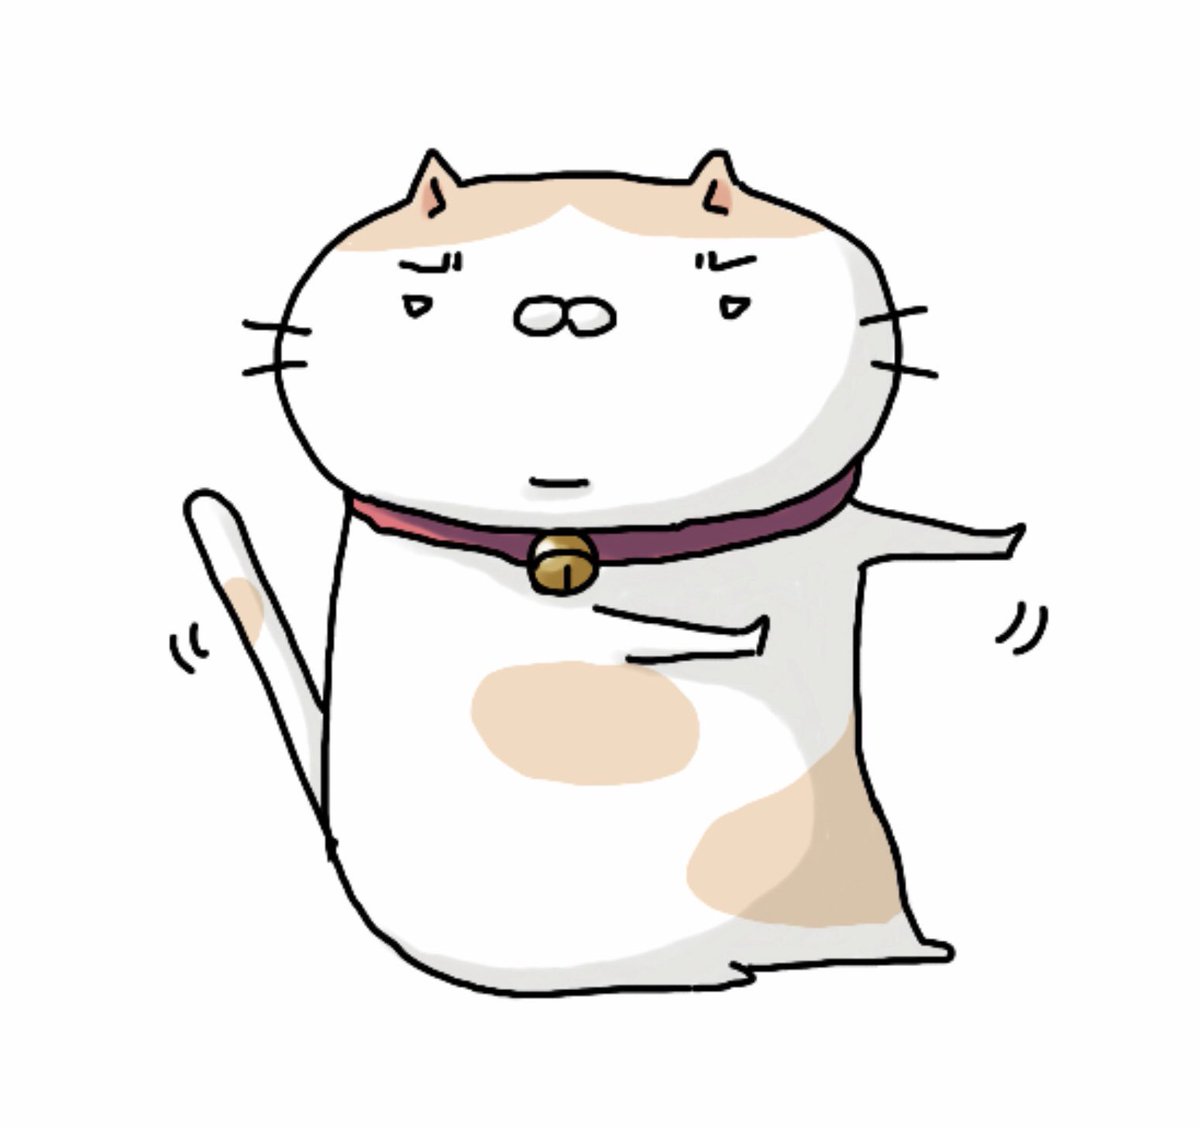 ふじ ブリーフおじさん Twitterissa ビックリしたら体が勝手に反応 実はビックリしてる 白目スコ アート イラスト かわいい キャラクター デザイン ふじ 猫 スコティッシュフォールド Lineスタンプ 猫イラスト Japan White Eyes Cat Cat